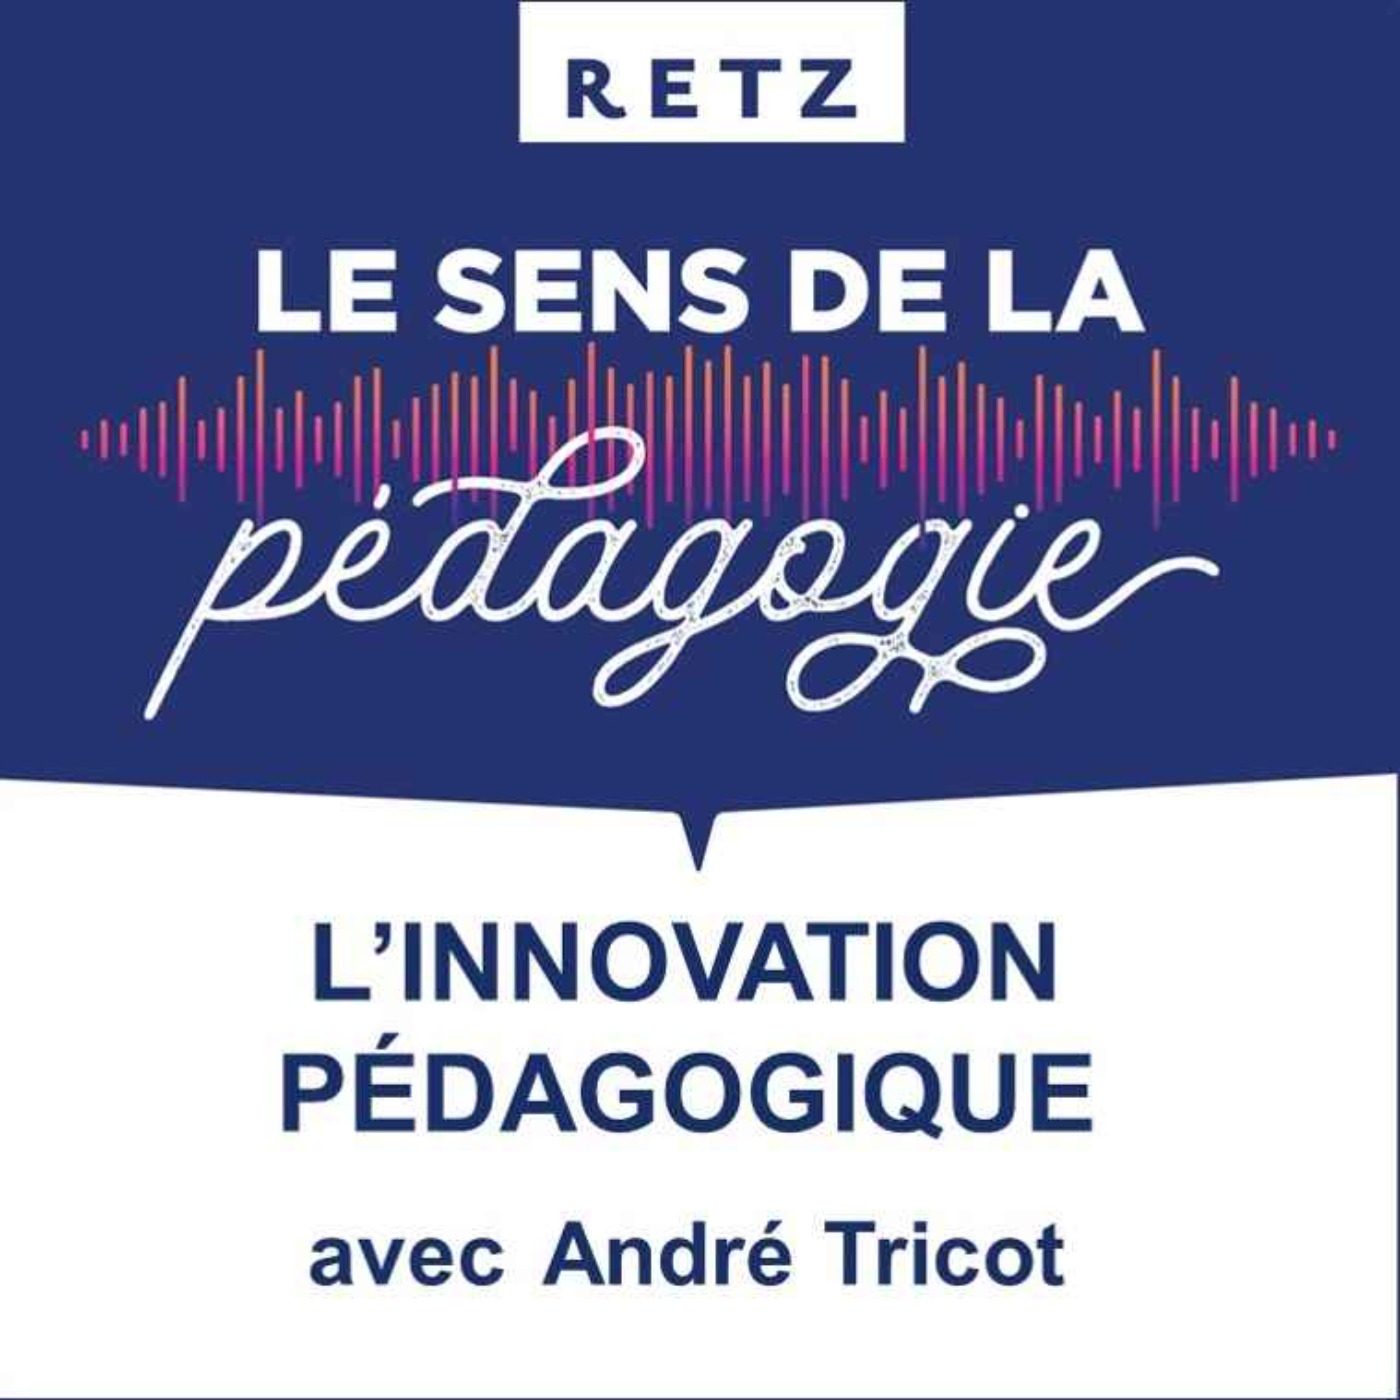 L'innovation pédagogique (André Tricot) - #06